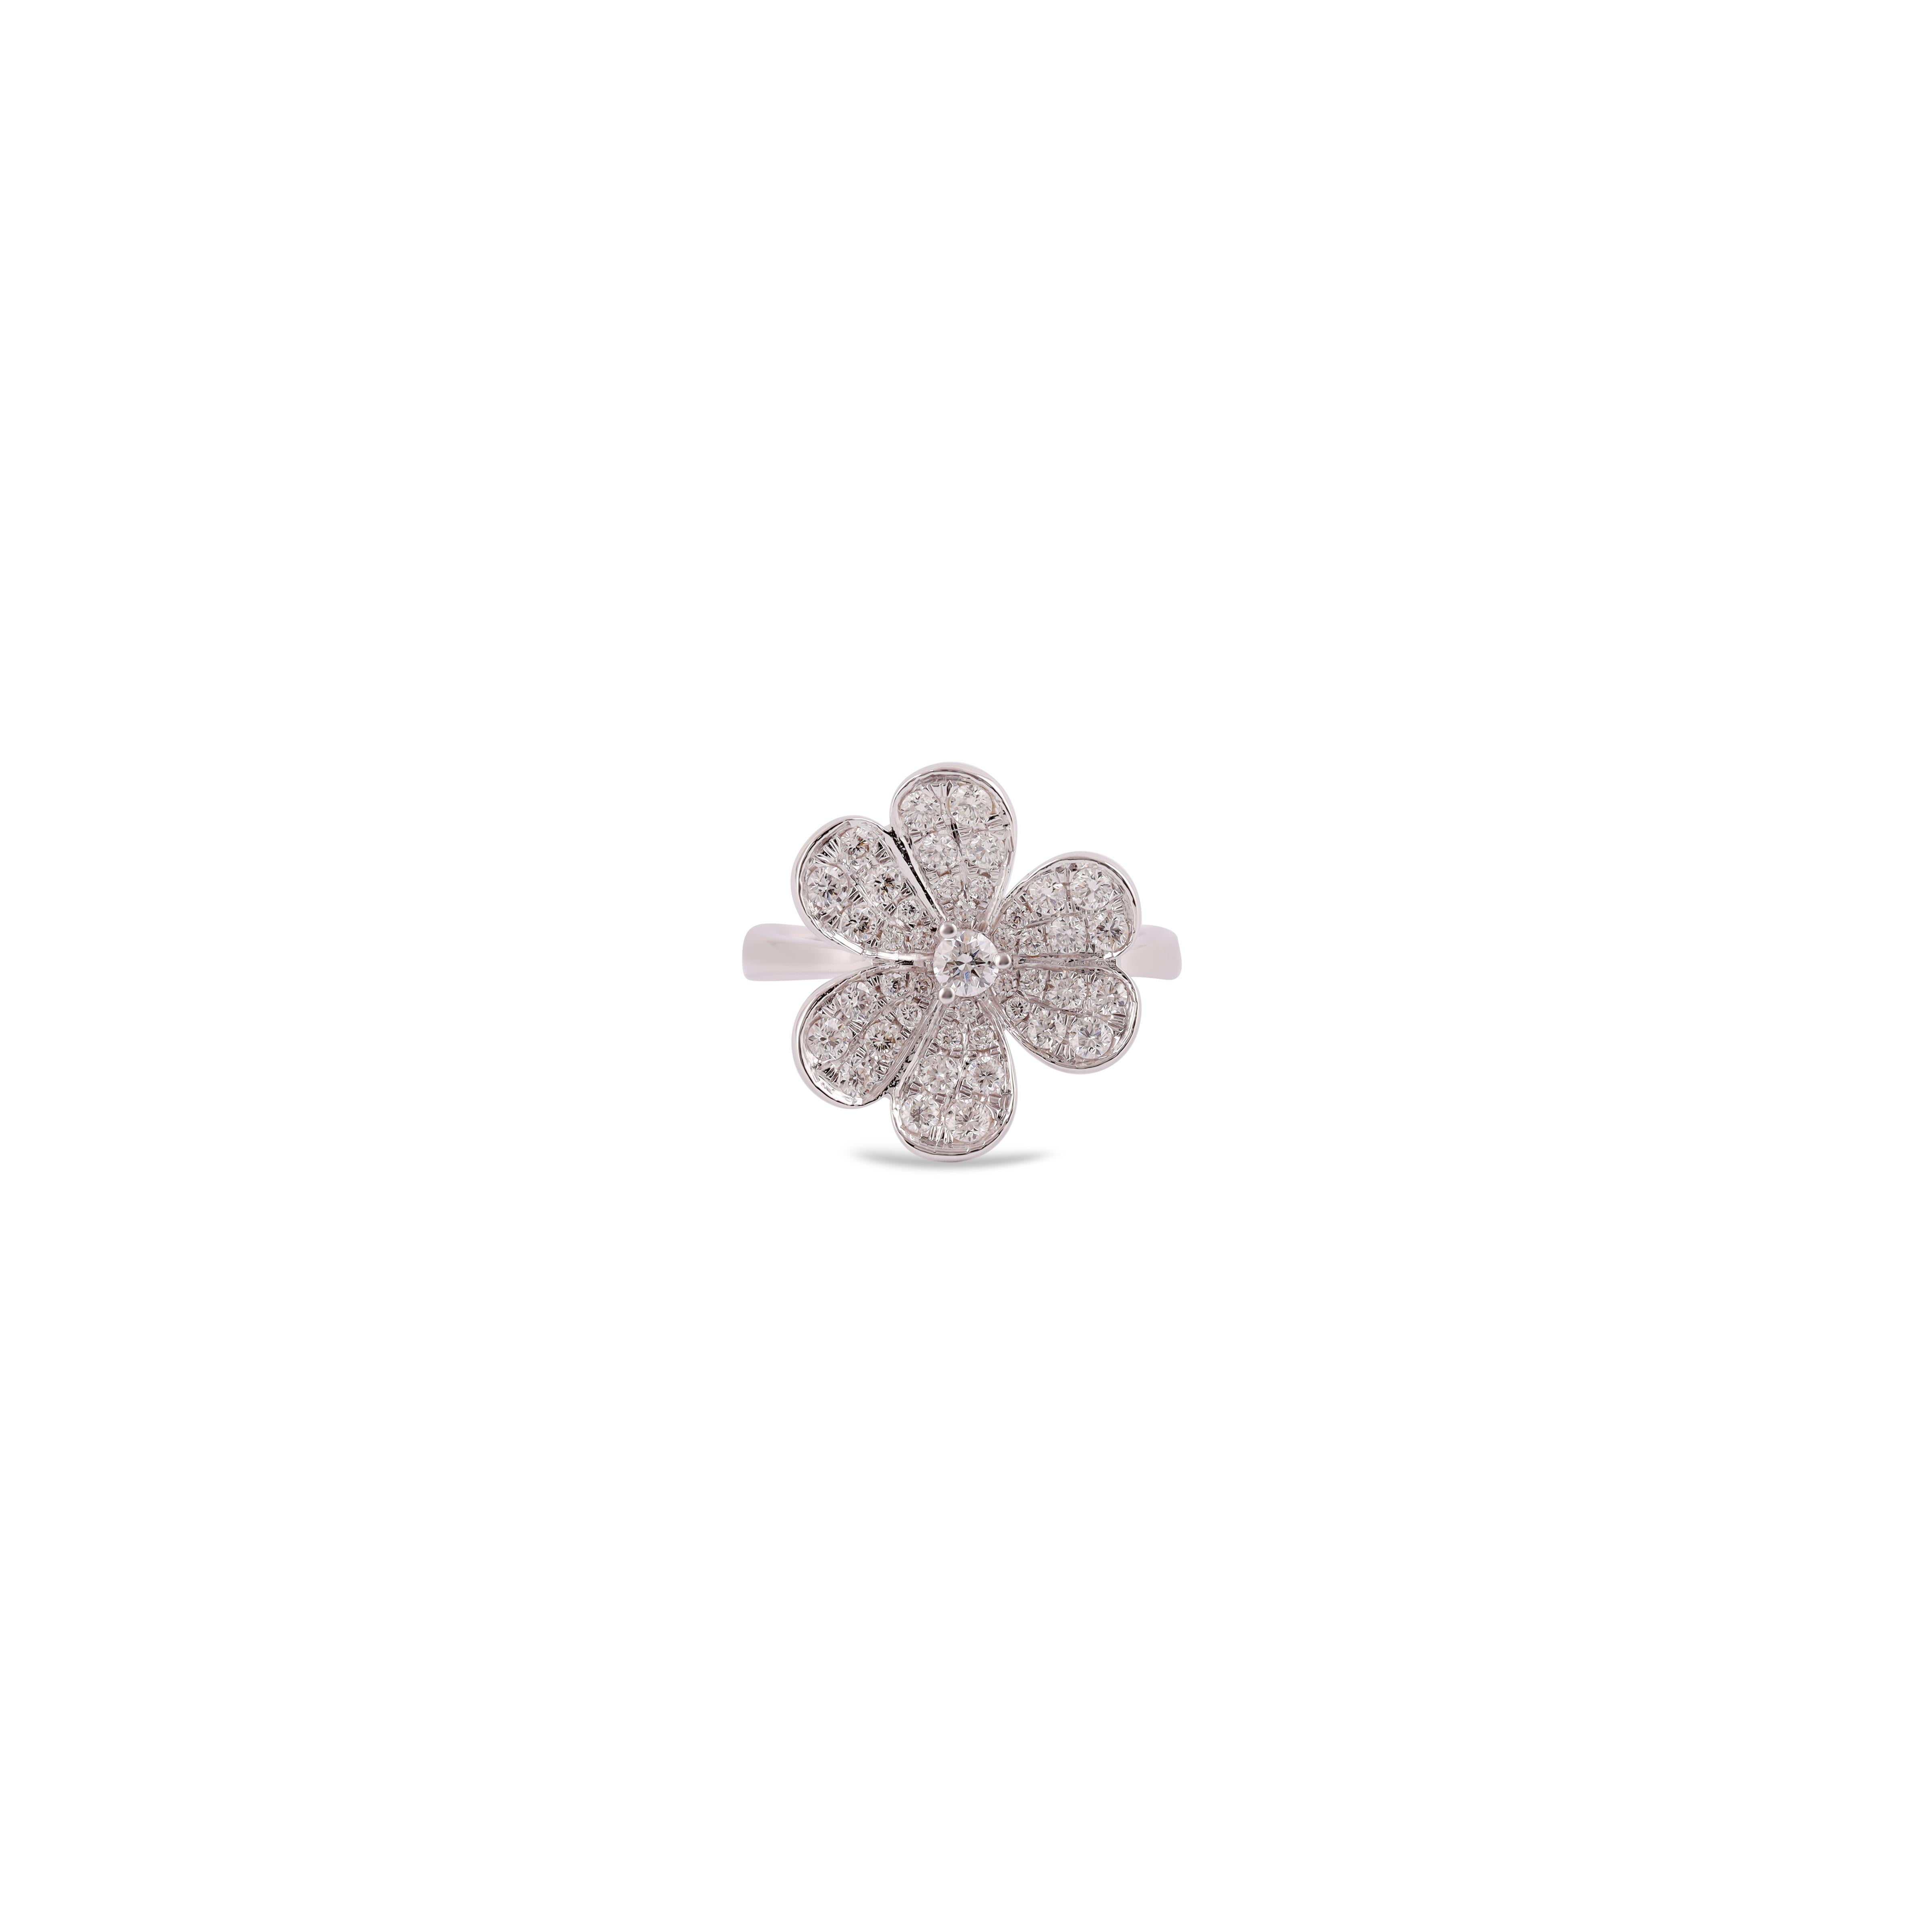 Cette élégante bague en or blanc 18 carats est ornée de 6 feuilles en forme de fleur.  Le diamant pèse 0,76 carat, l'ensemble de la bague en or blanc 18 carats pèse 4,48 grammes, la taille de la bague peut être modifiée en fonction des besoins.